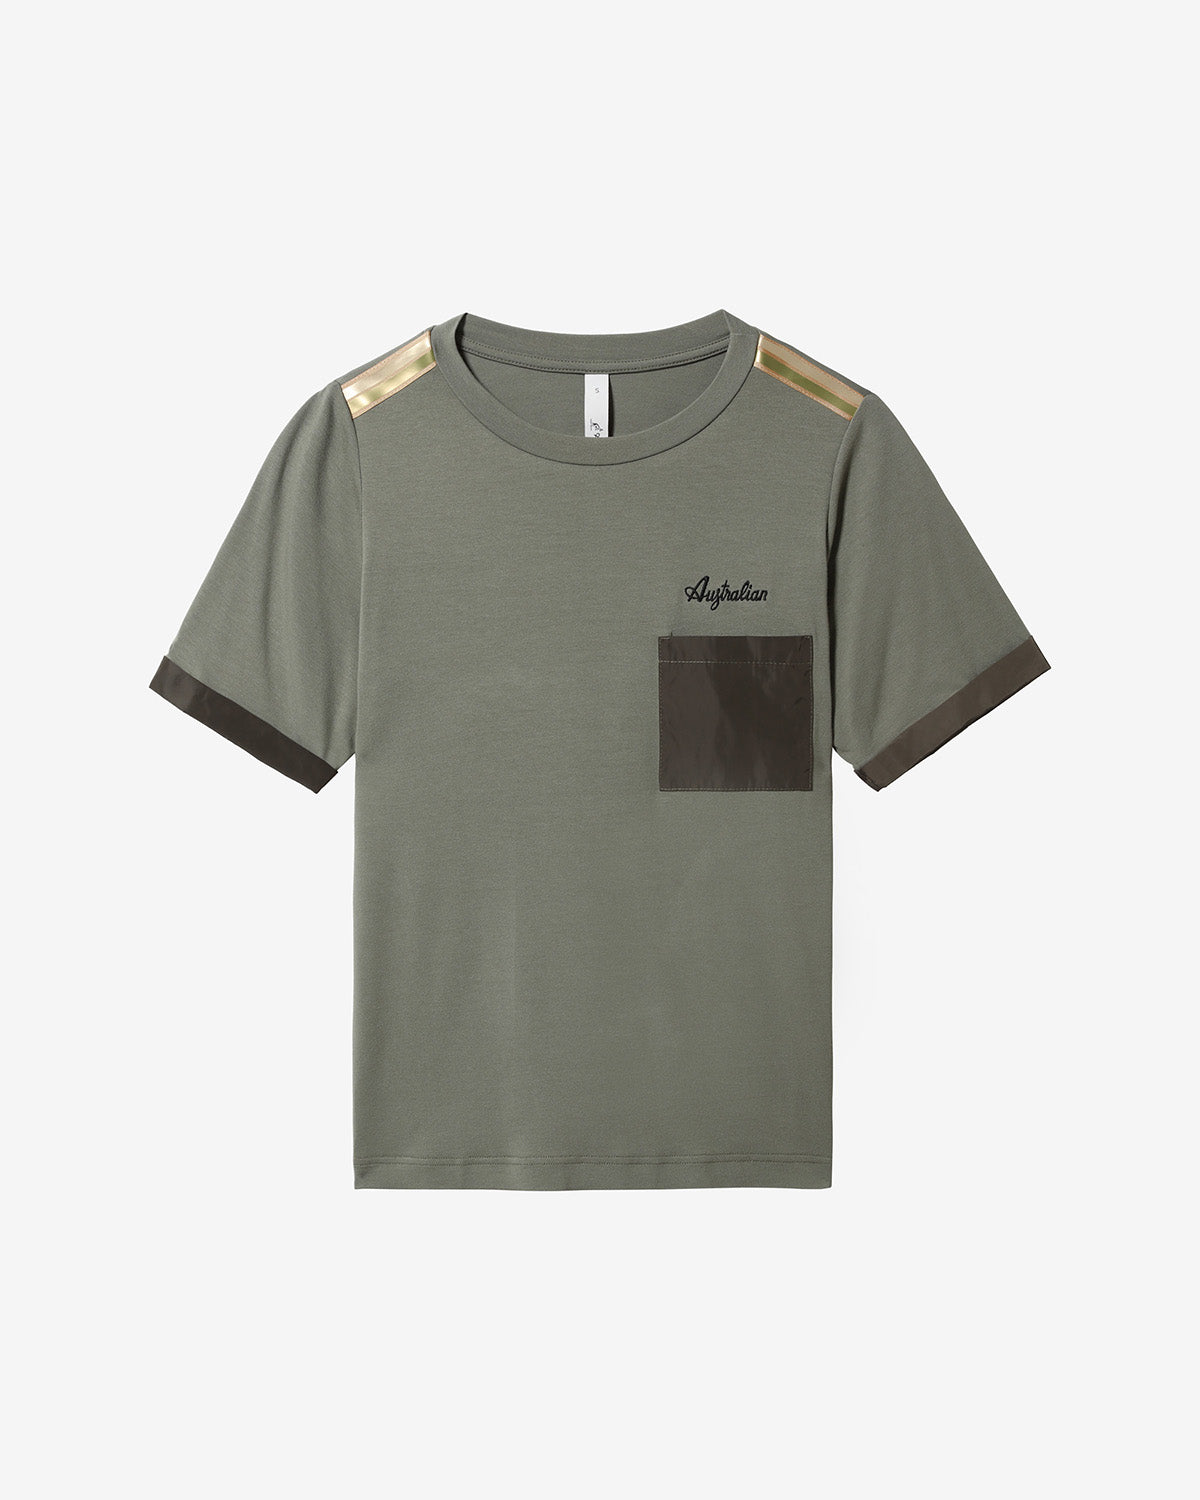 Gold Tape T-shirt: Australian Sportswear